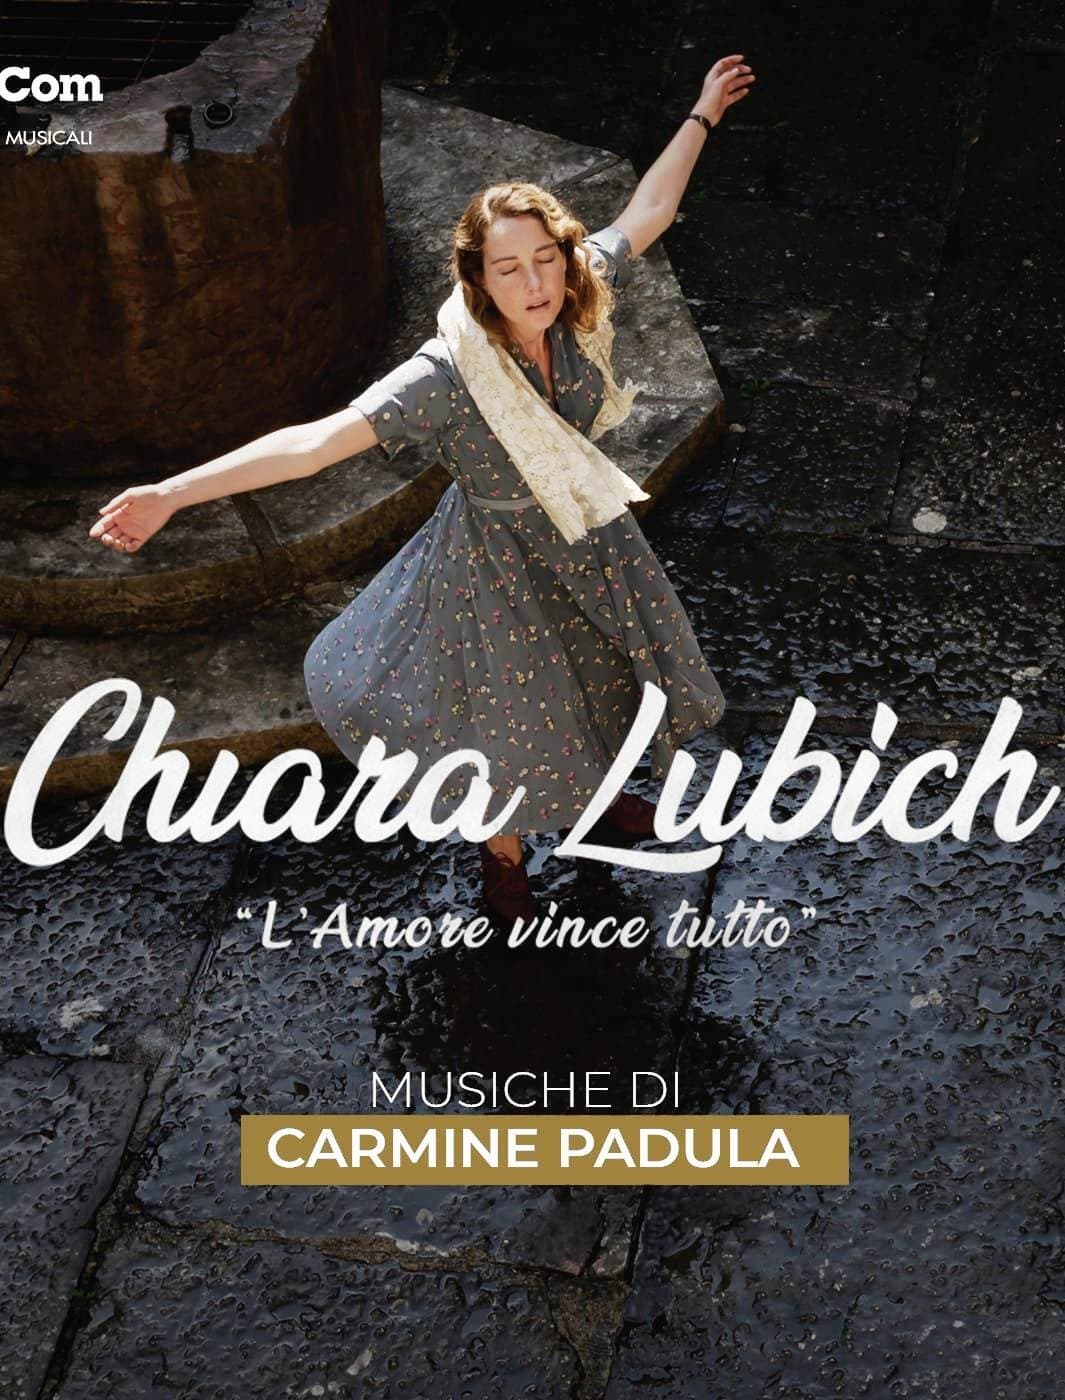 Caratula de Chiara Lubich - L'Amore vince tutto (Chiara Lubich: el amor todo lo puede) 